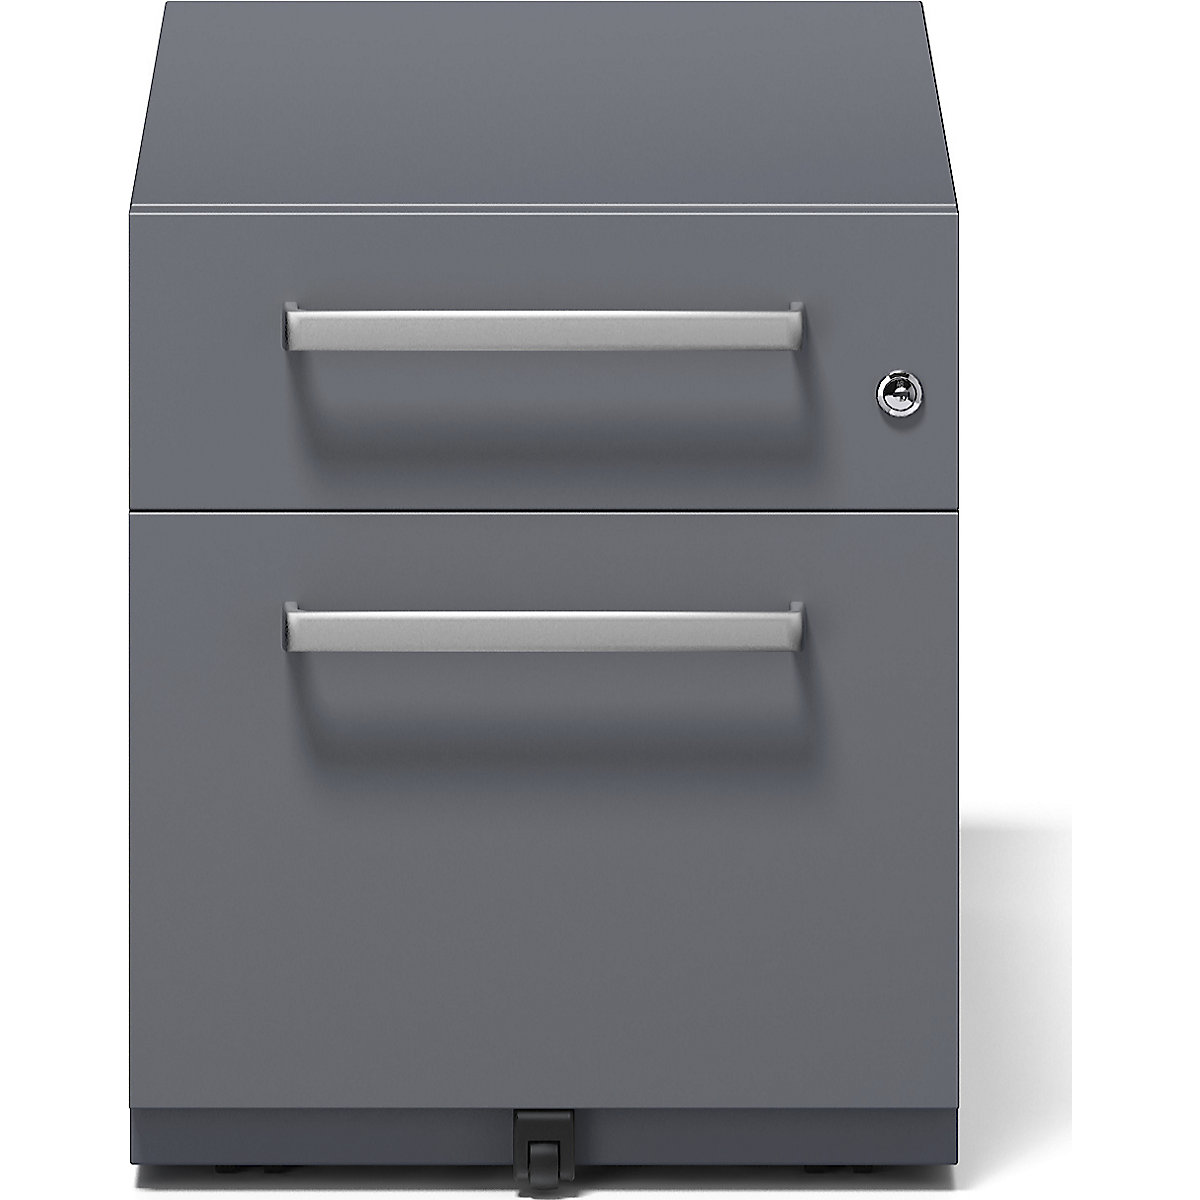 Buck rodante Note™ con 1 archivador colgante y 1 cajón universal – BISLEY (Imagen del producto 14)